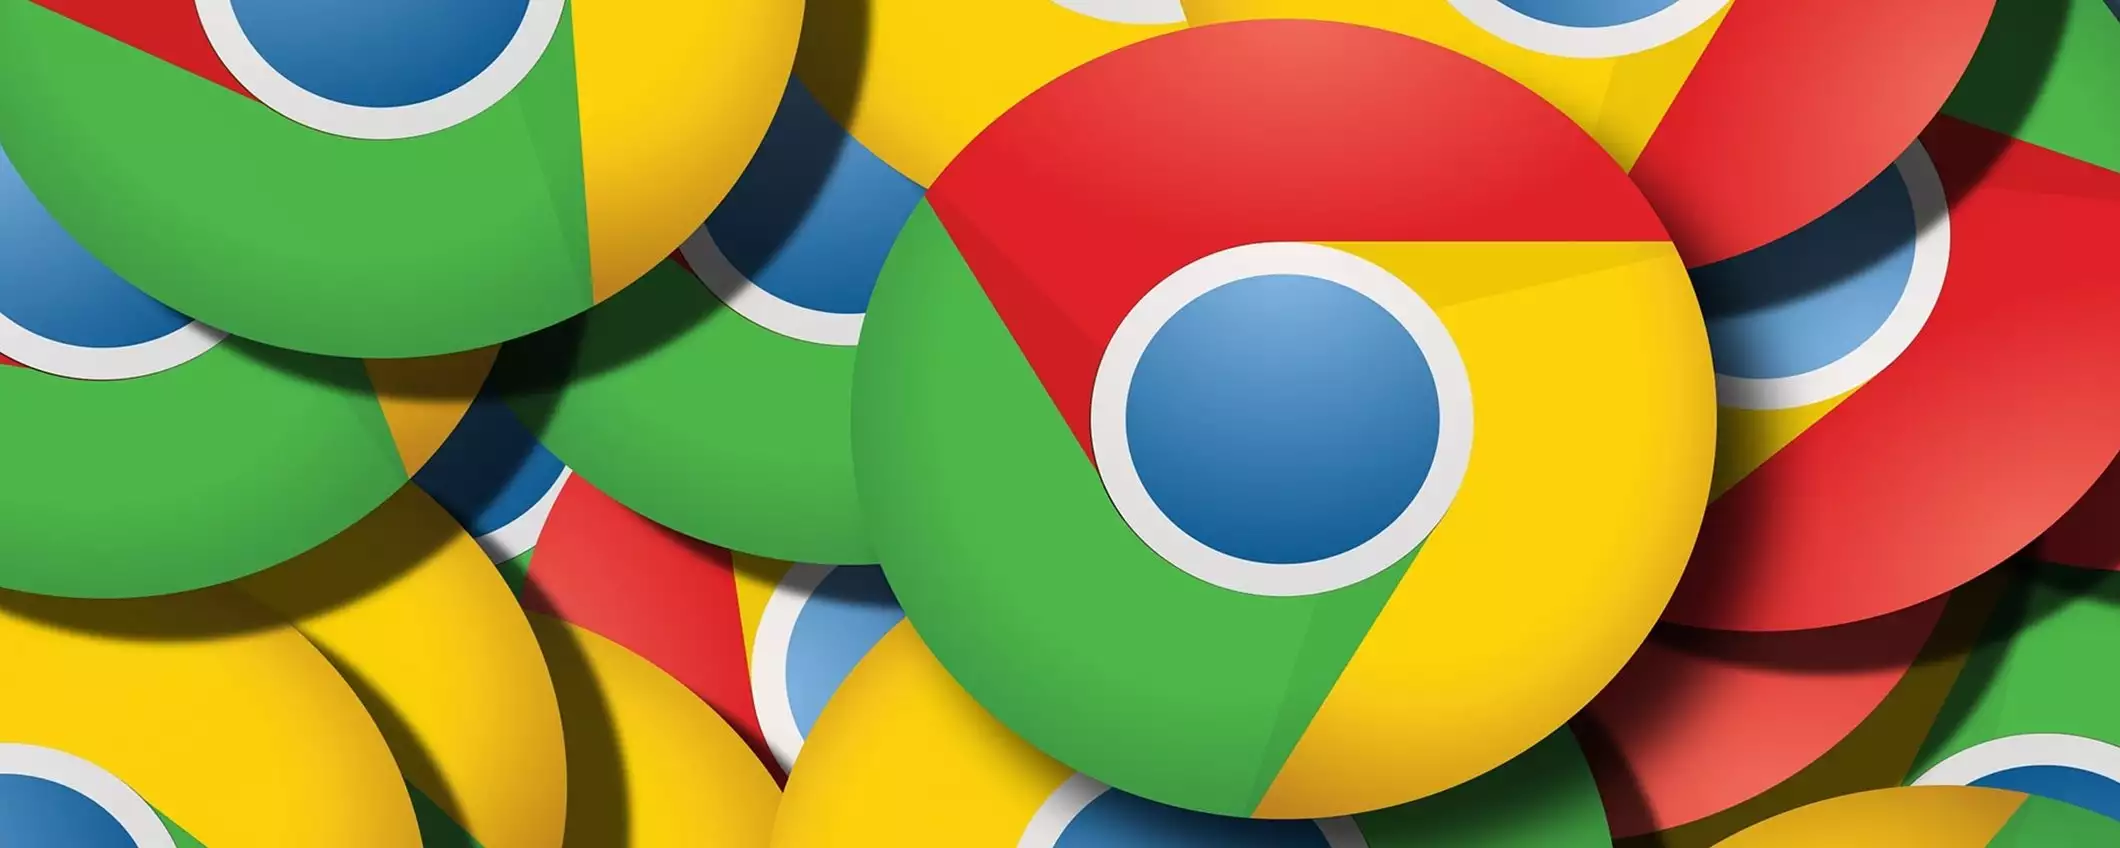 Google Chrome: modifiche alla cache per prestazioni migliori